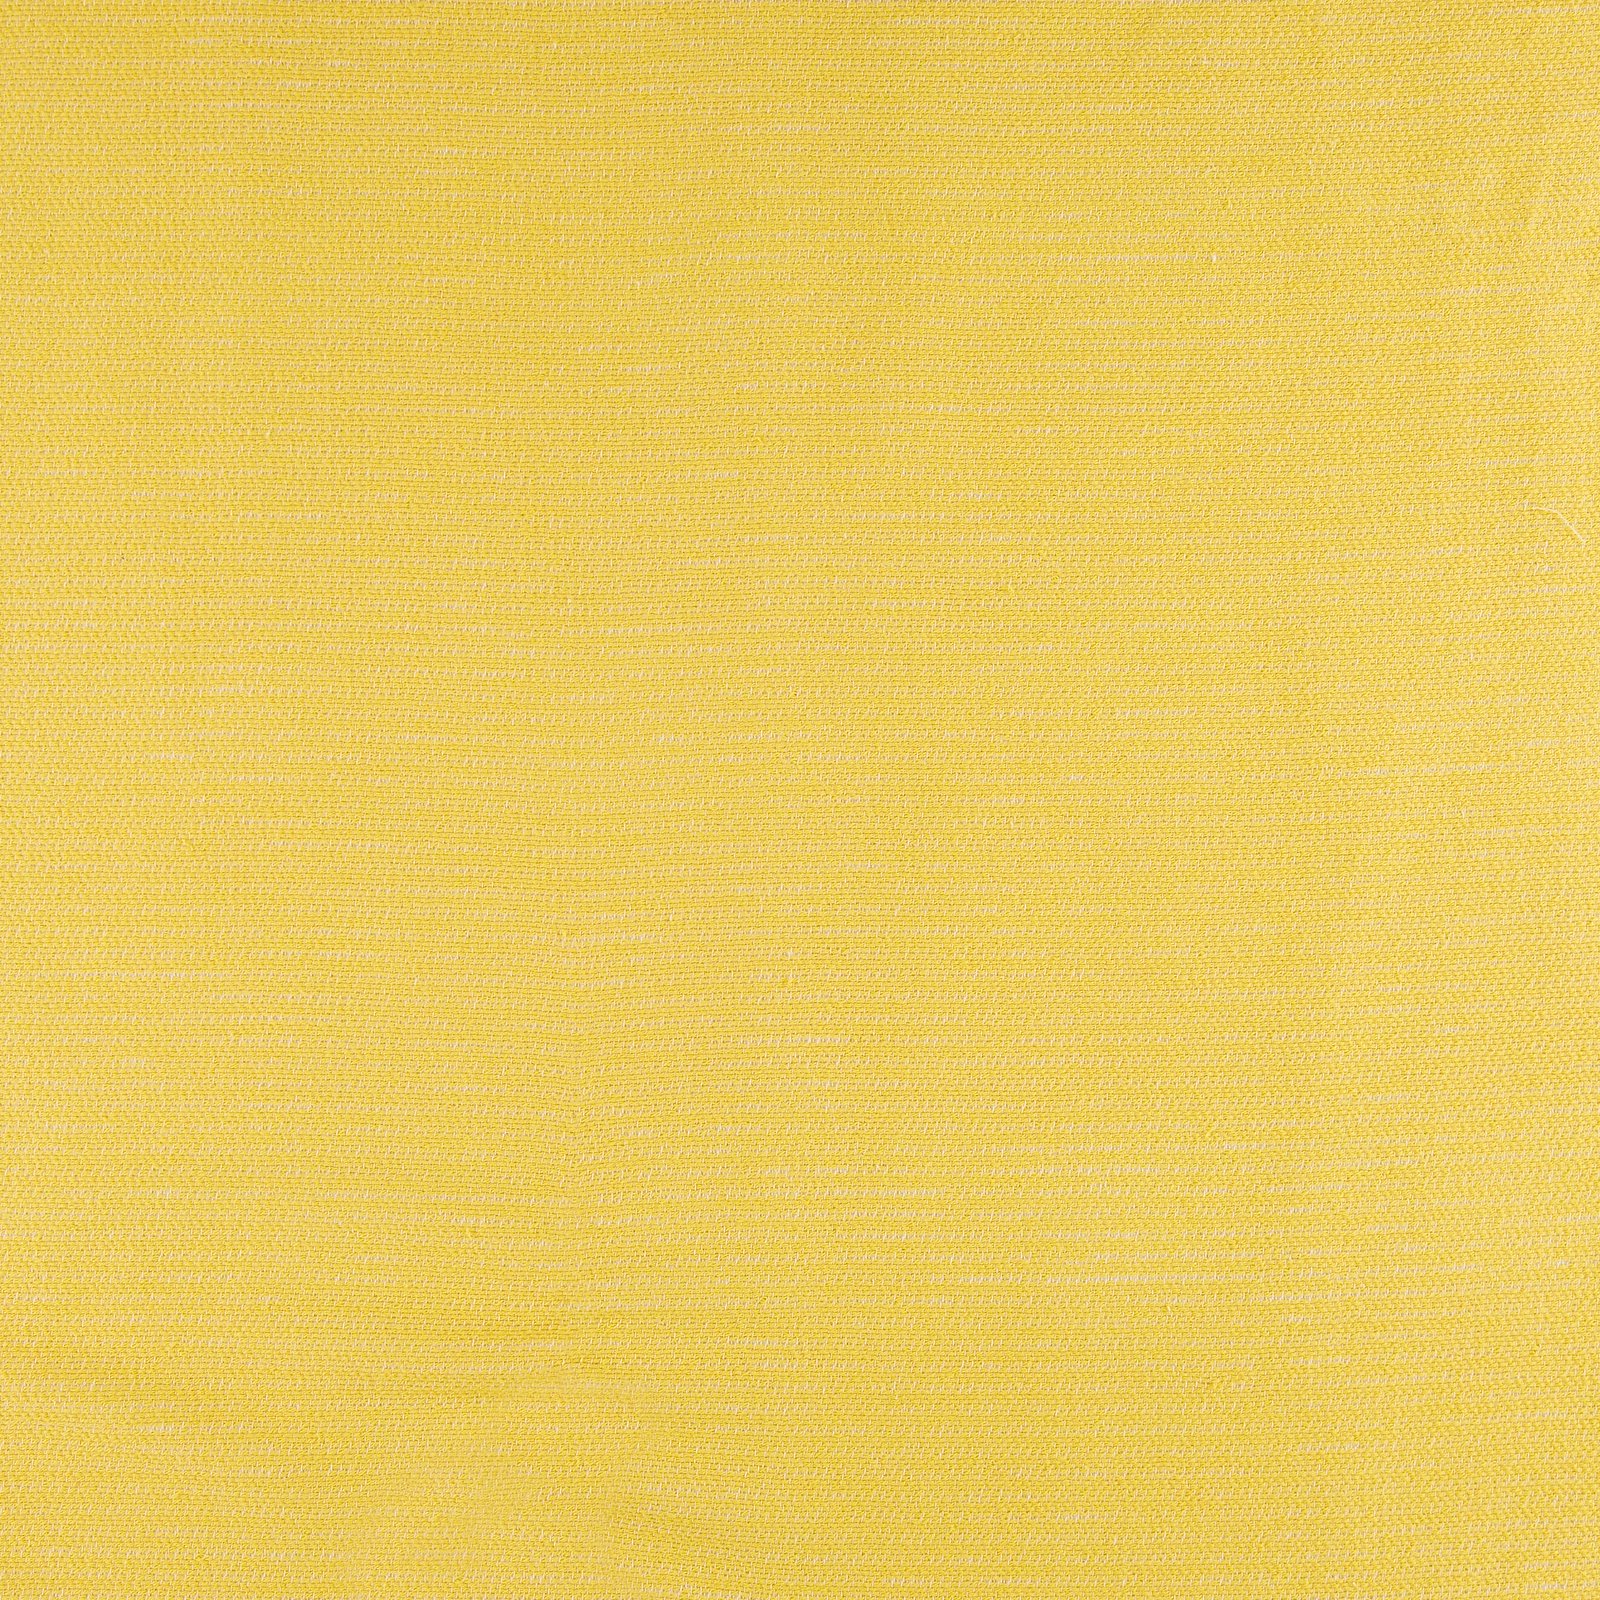 Baumwolle gewebt 2-seitig gelb/offwhite 400342_pack_solid